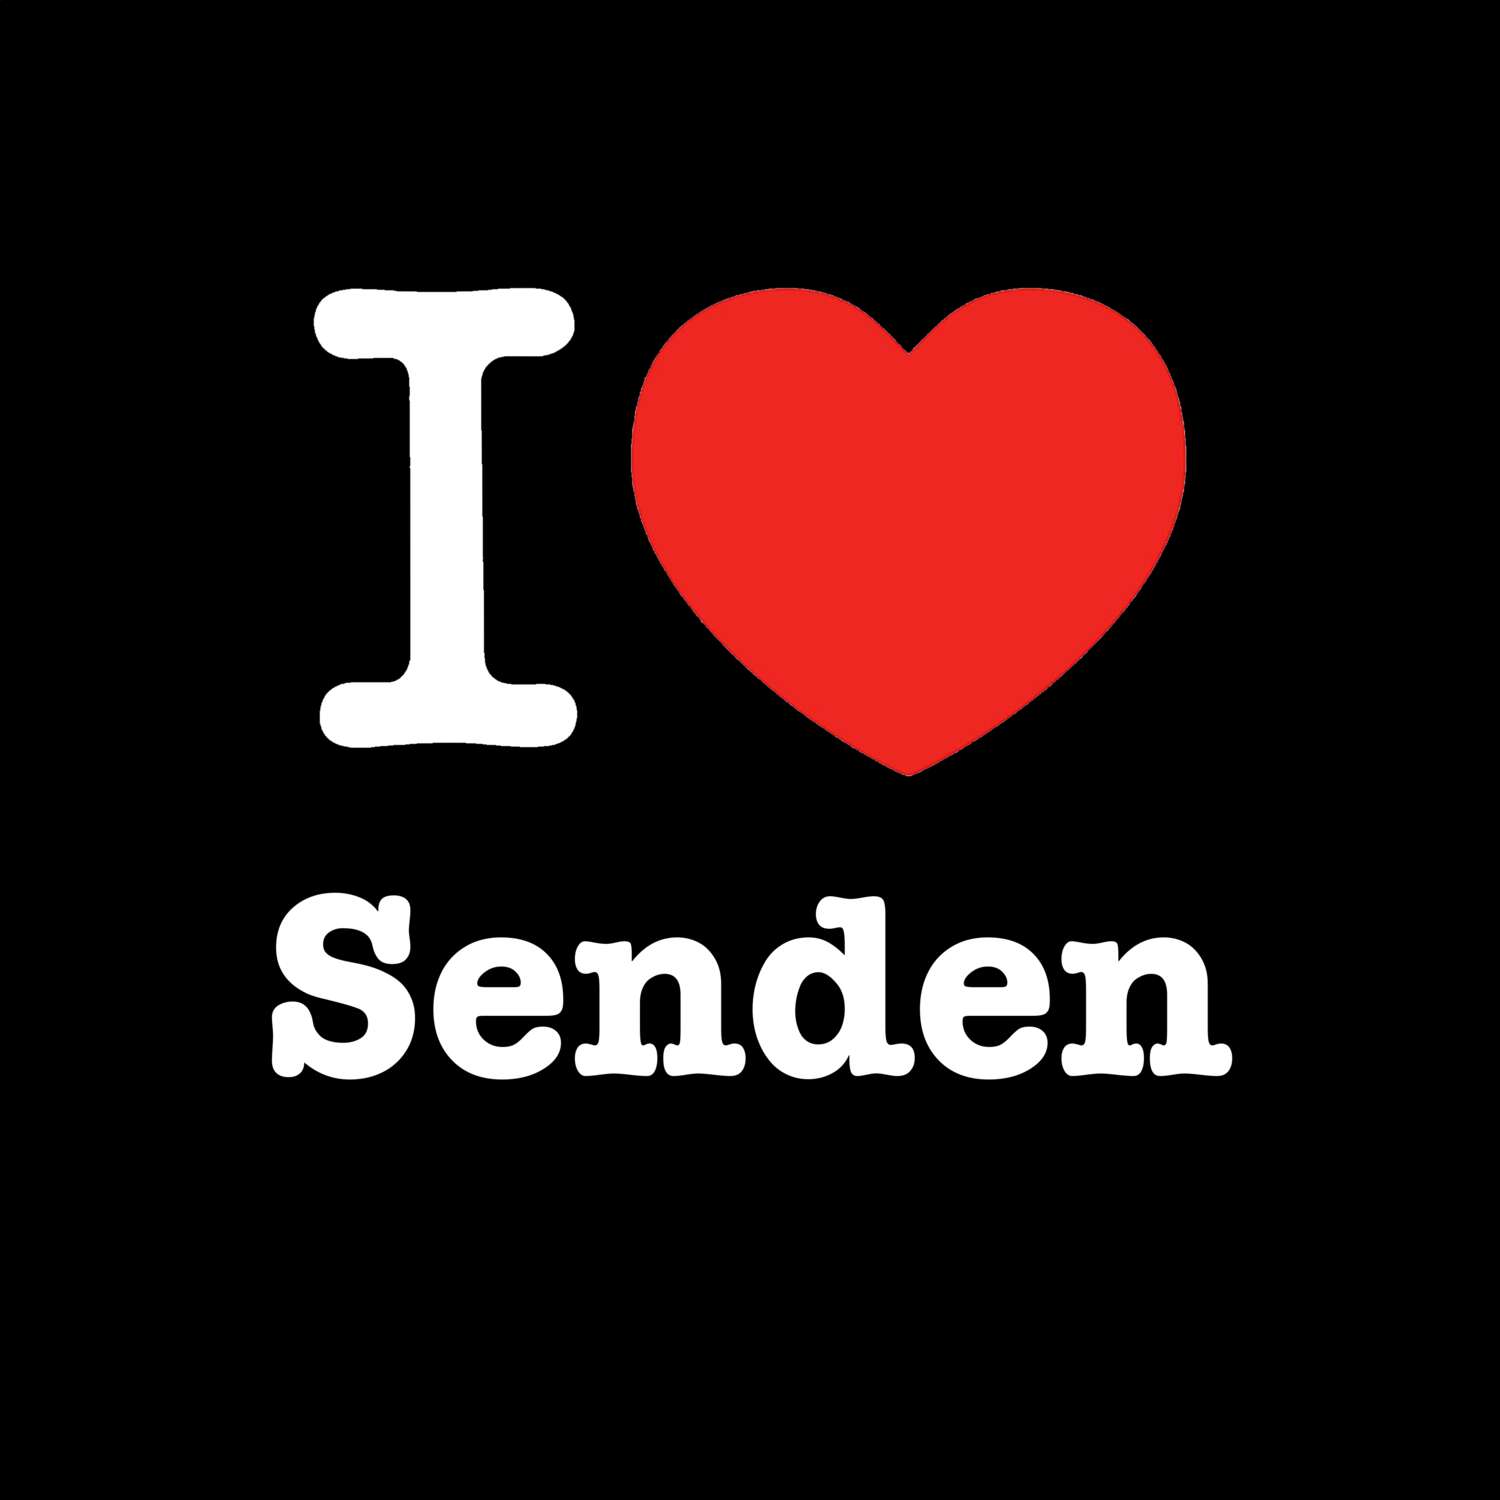 Senden T-Shirt »I love«